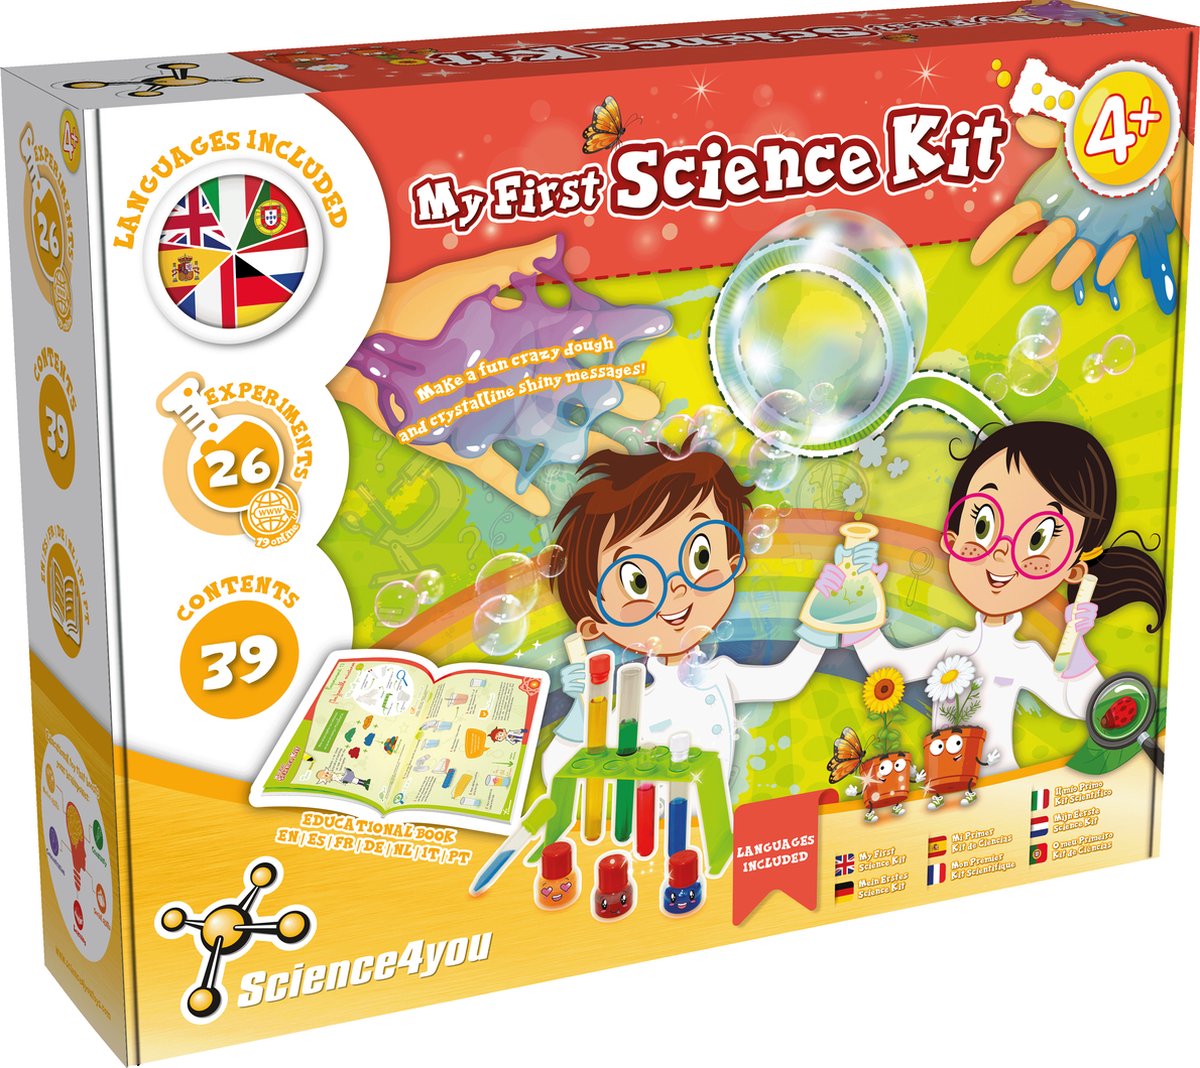 Science4you My First Science Kit - Experimenteerset - Wetenschap & Spel - Experimenteerdoos met veel Scheikunde Experimenten - Laboratorium Speelgoed - 4+ Jaar